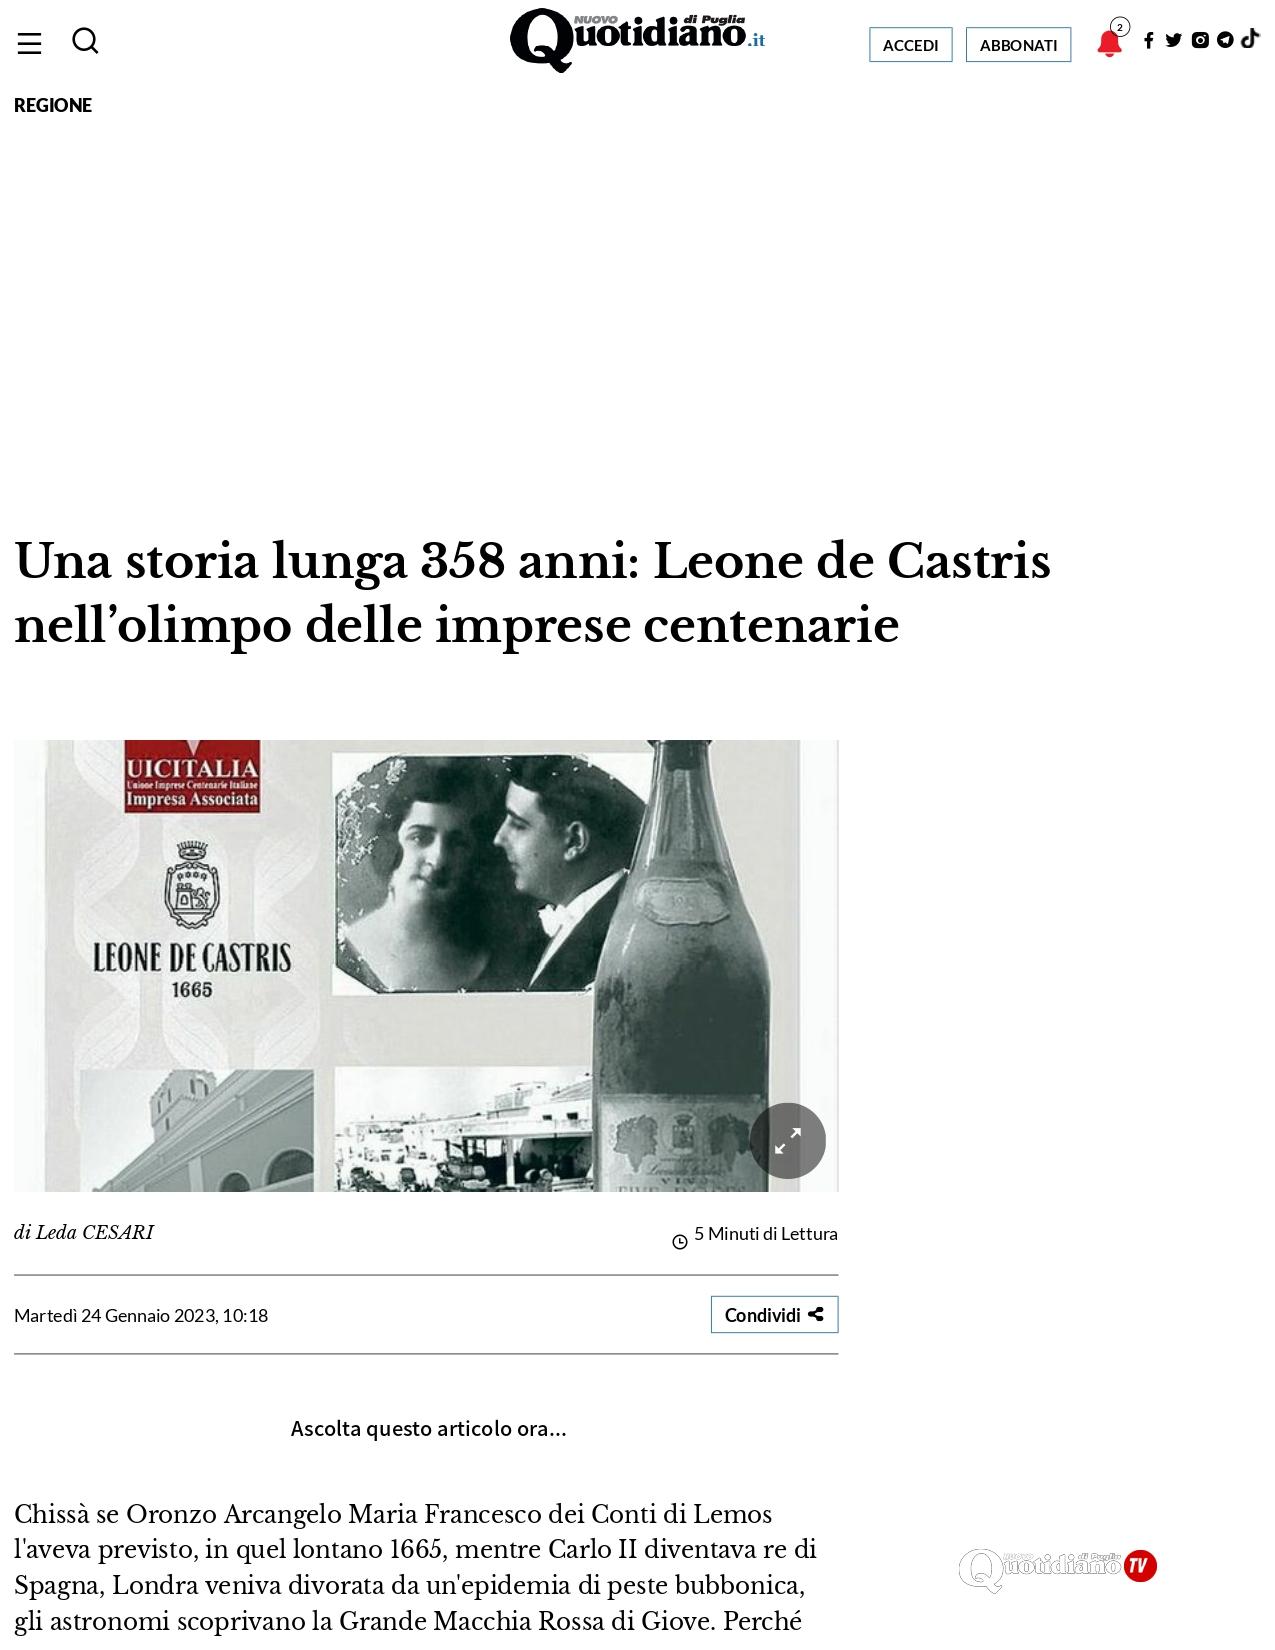 Il Nuovo Quotidiano di Puglia Una storia lunga 358 anni Leone de Castris nellolimpo delle imprese centenarie 24 febbraio 2022 1 page 0001